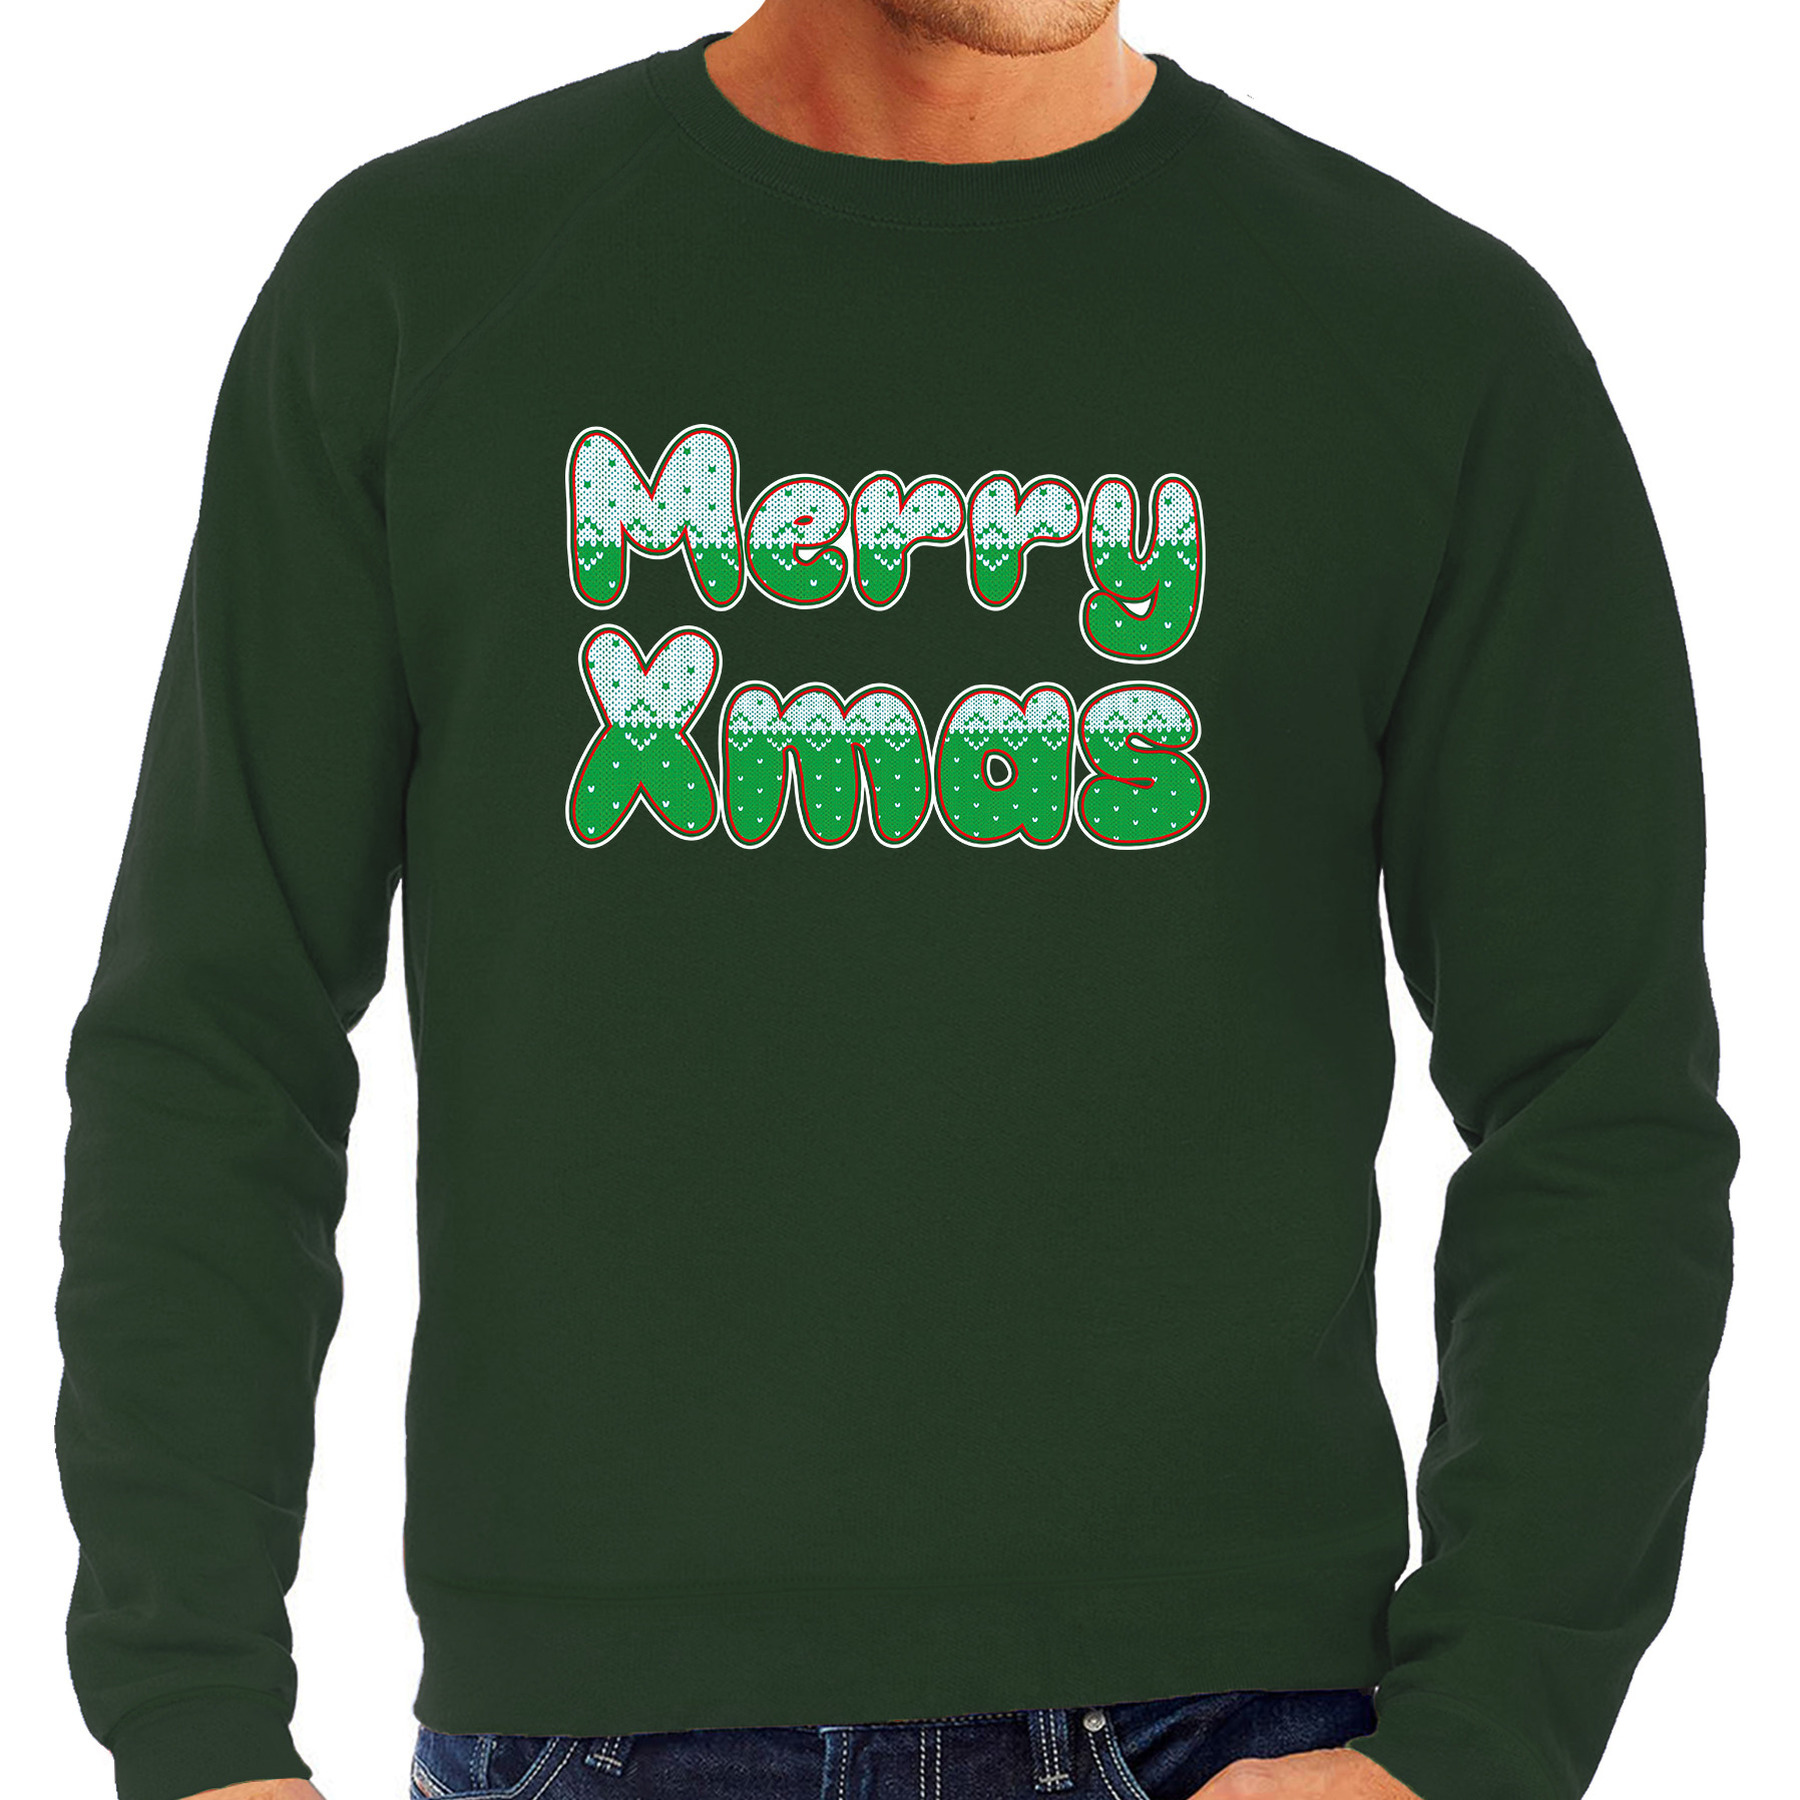 Merry xmas foute Kerstsweater-Kersttrui groen voor heren